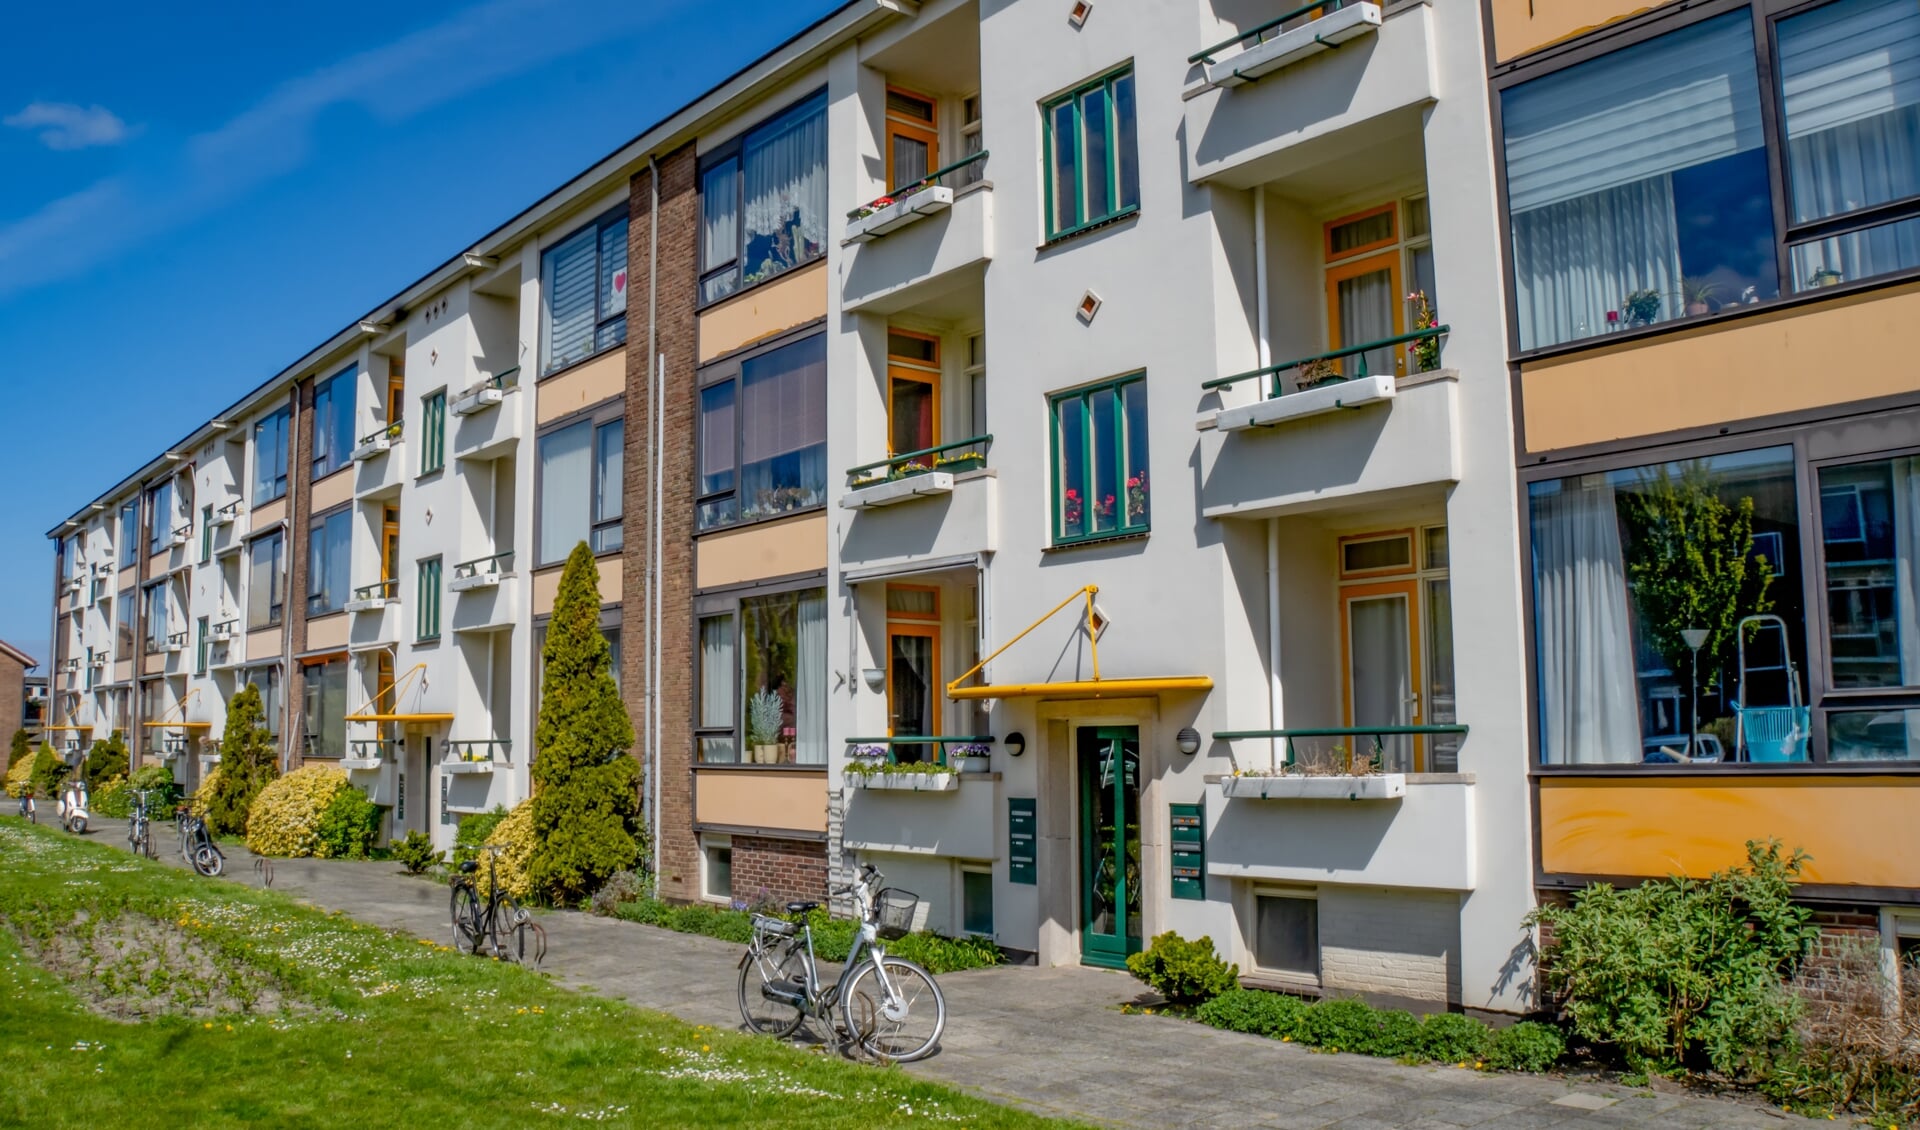 Appartementen van Rijnhart Wonen in de Leiderdorpse wijk Ouderzorg.